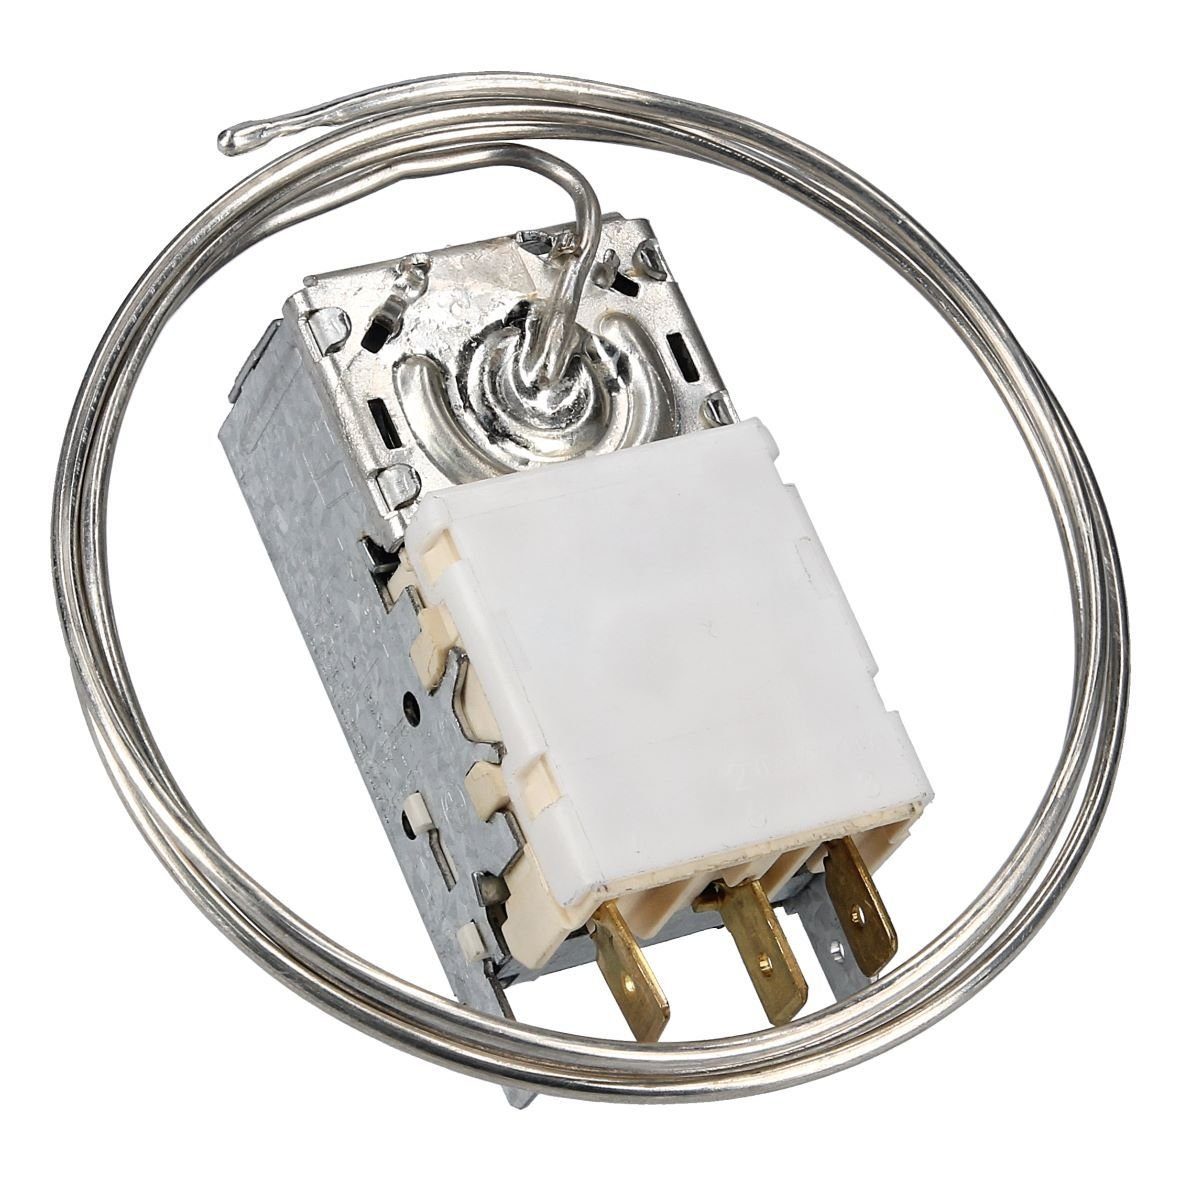 K59-S2785500 Thermodetektor wie Kühlschrank Thermostat / RobertShaw Gefrierschrank easyPART Ranco,